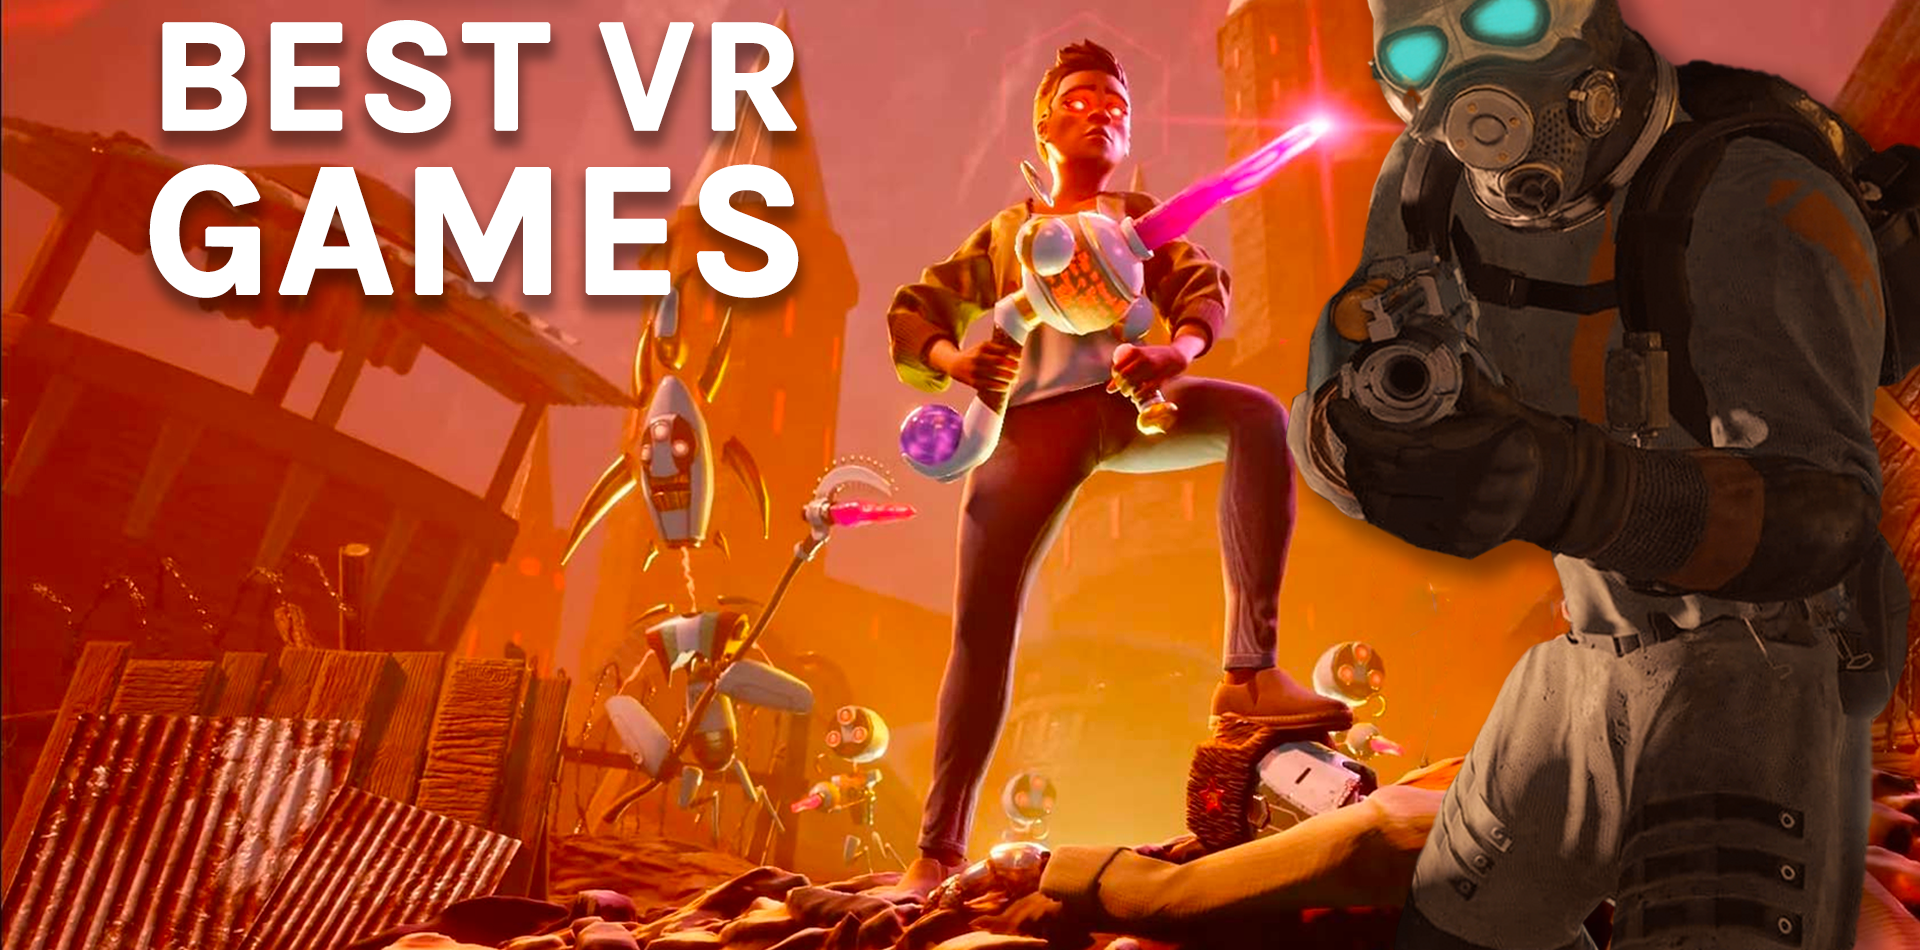 משחקי VR בחינם שיפוצצו את דעתך